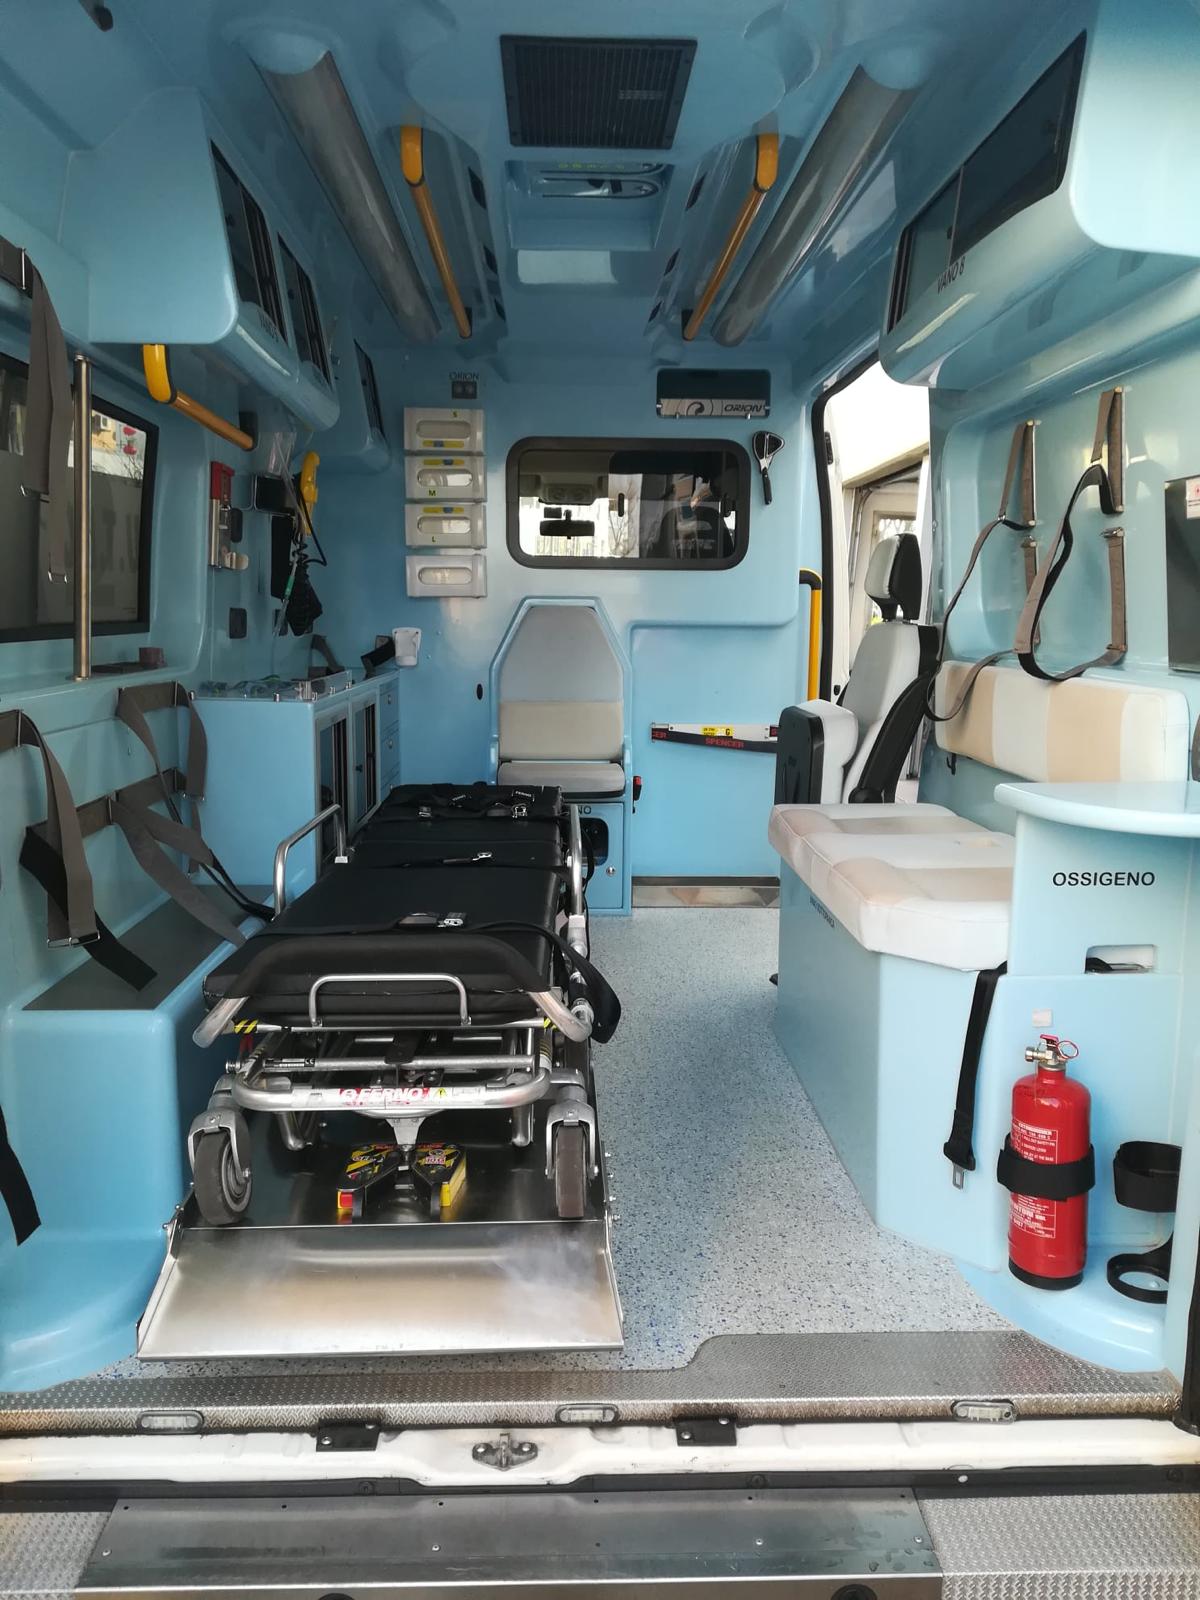 02_Nuova-ambulanza-CRI-Voghera-2020